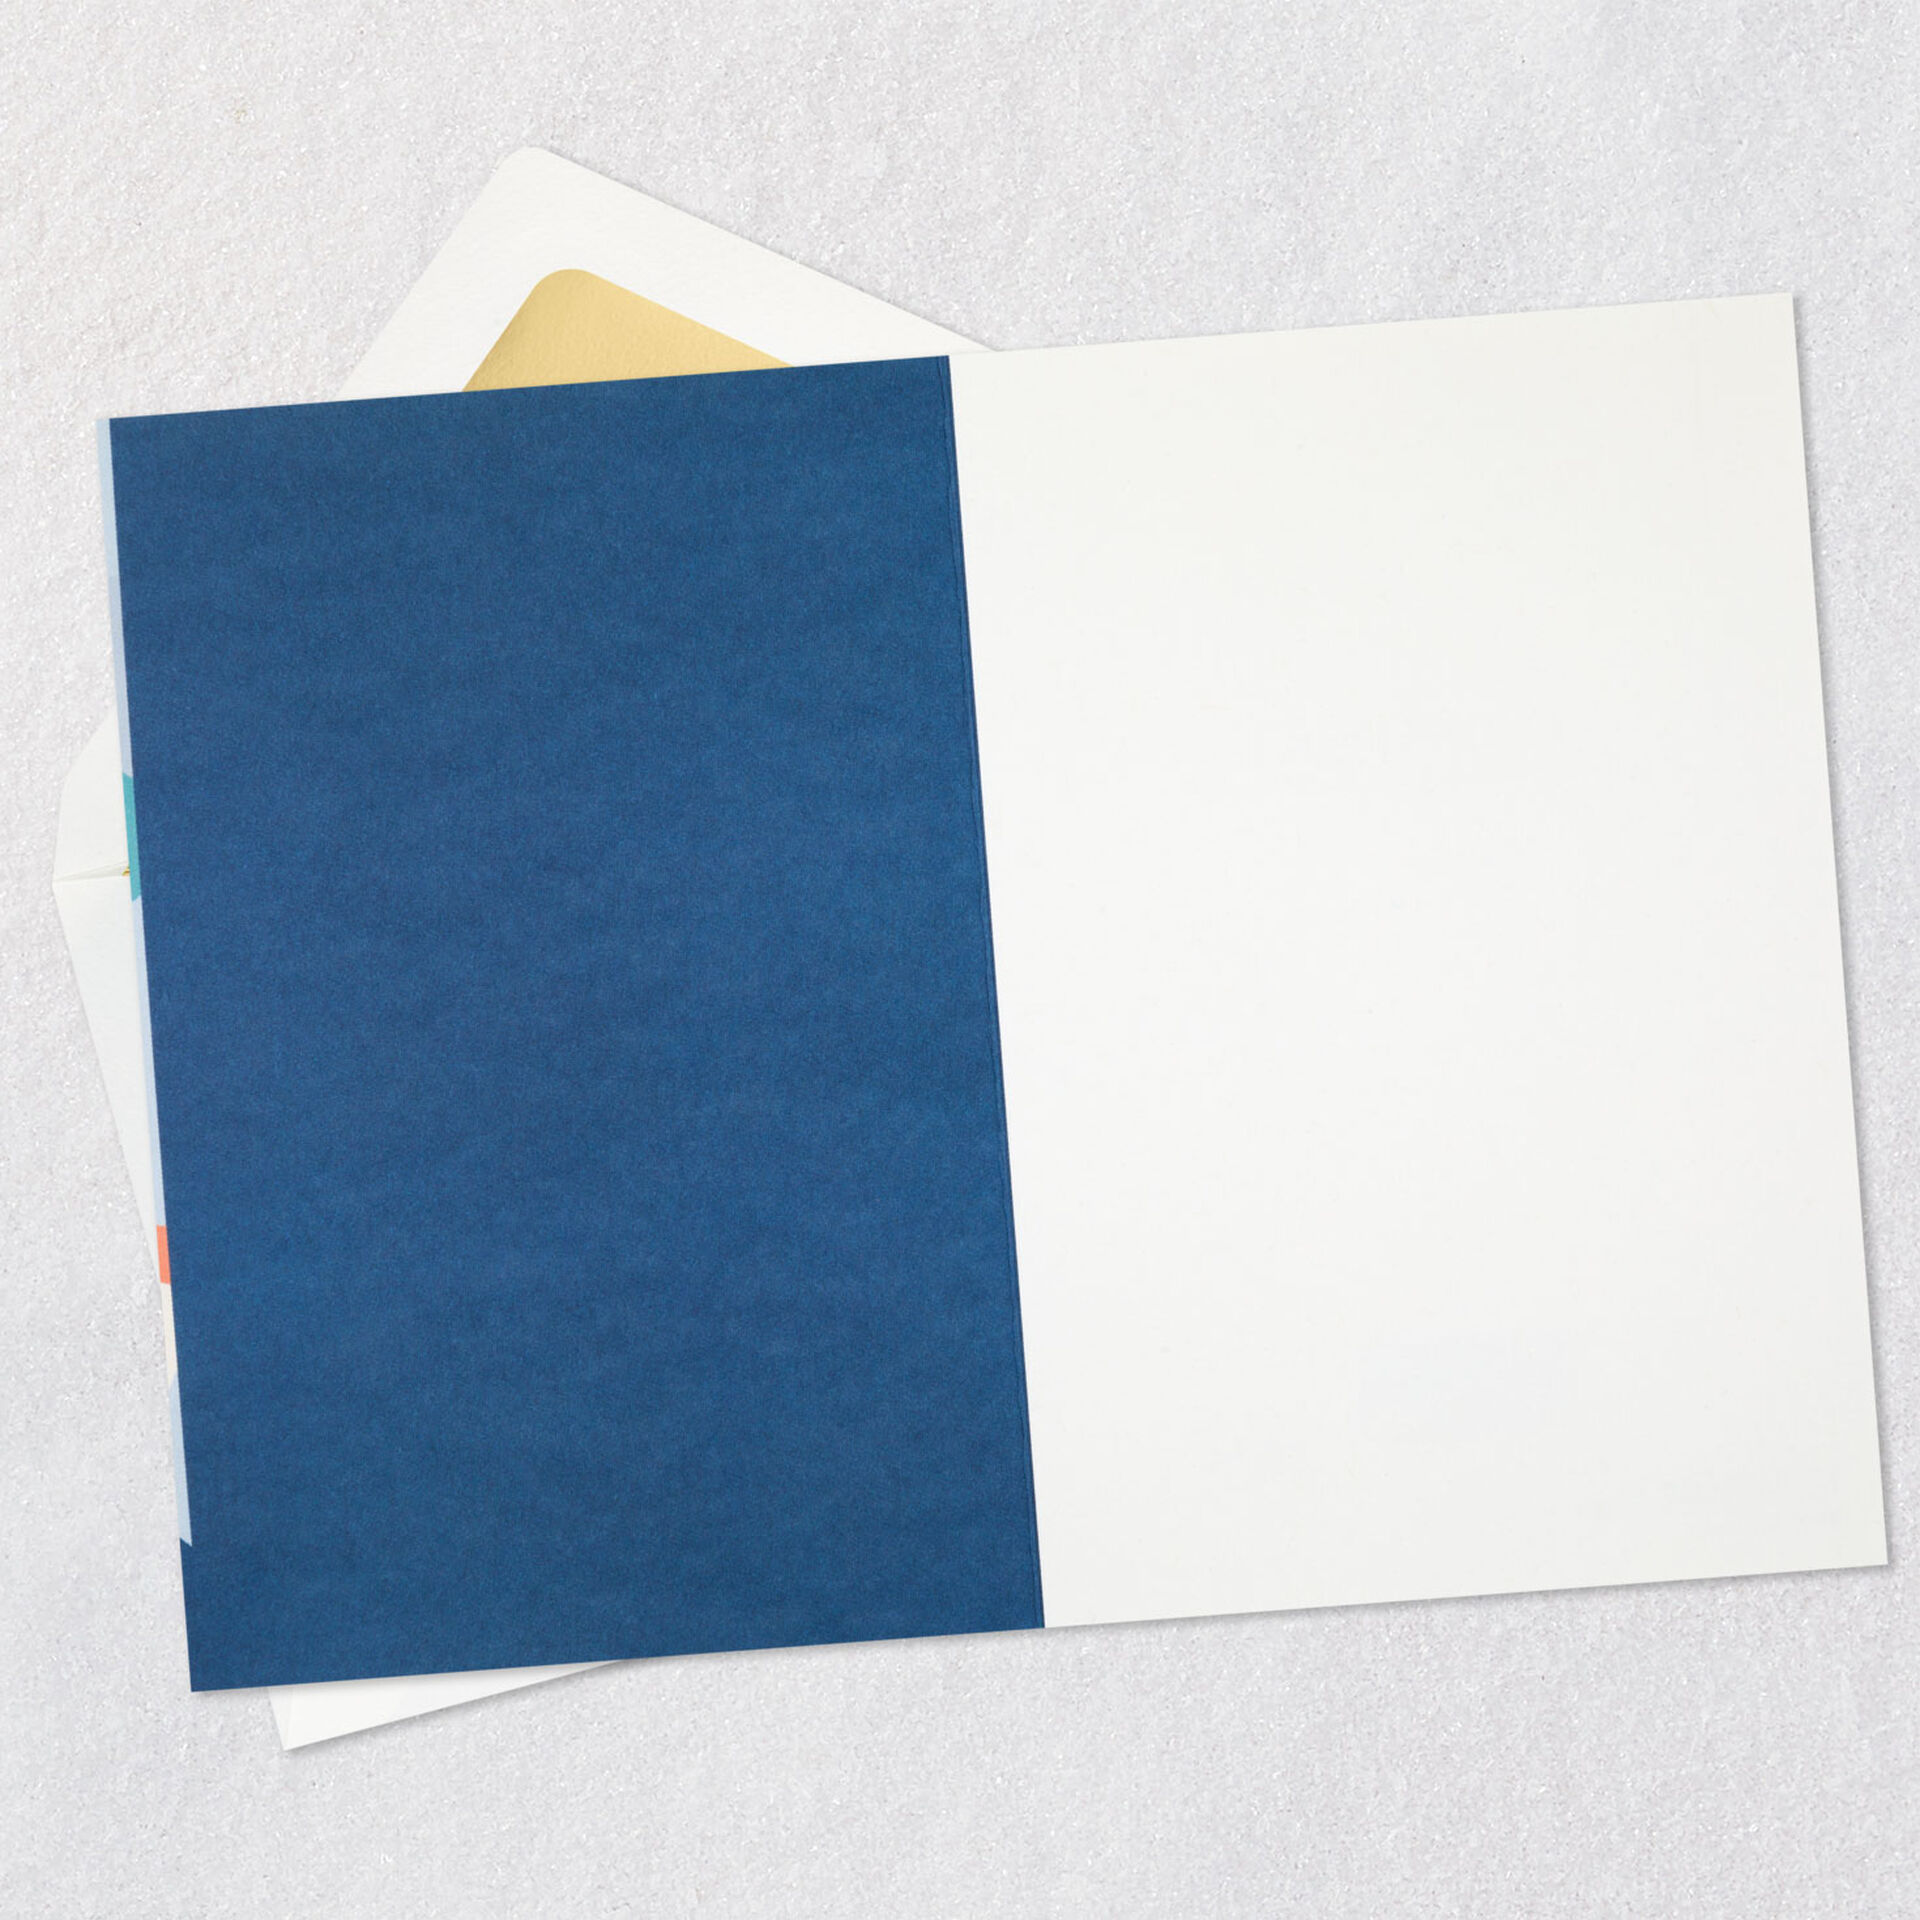 Confetti-on-Blue-Blank-Birthday-Card-for-Him_599LAD9859_02